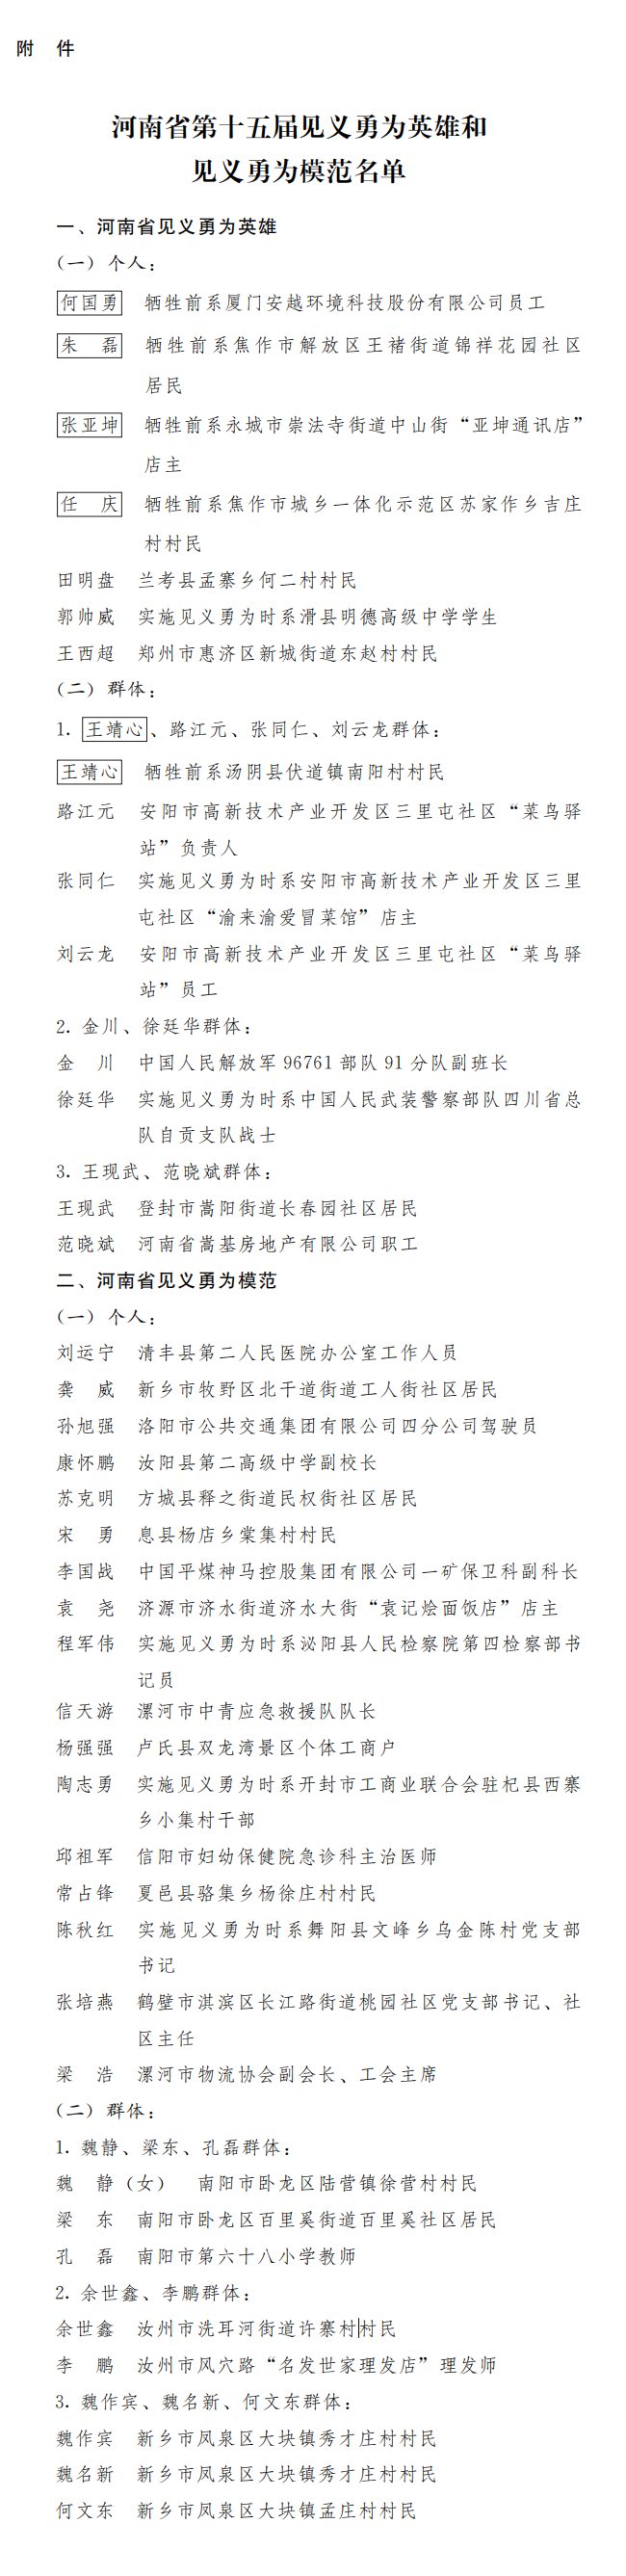 河南省人民政府关于表彰河南省第十五届见义勇为英雄和见义勇为模范的决定